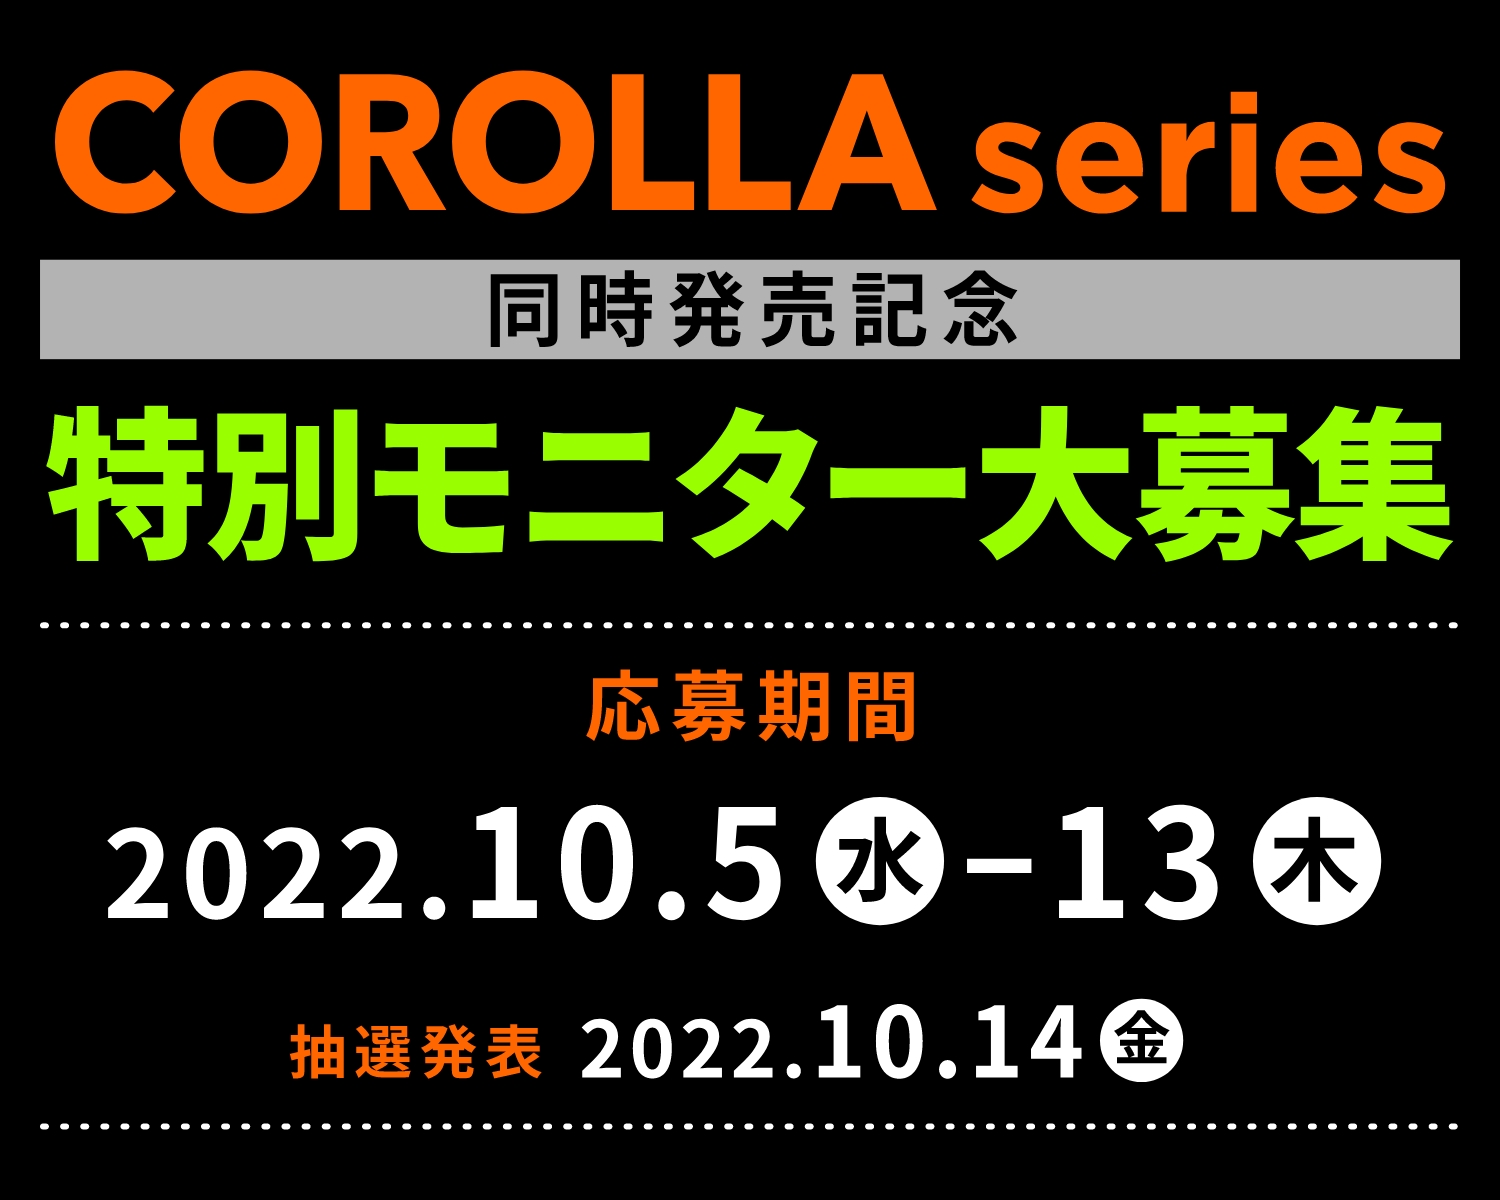 カローラシリーズ3車種同時発売記念 特別モニター大募集 応募期間 2022.10.05(水)-13(木) 抽選発表 2022.10.14(金)